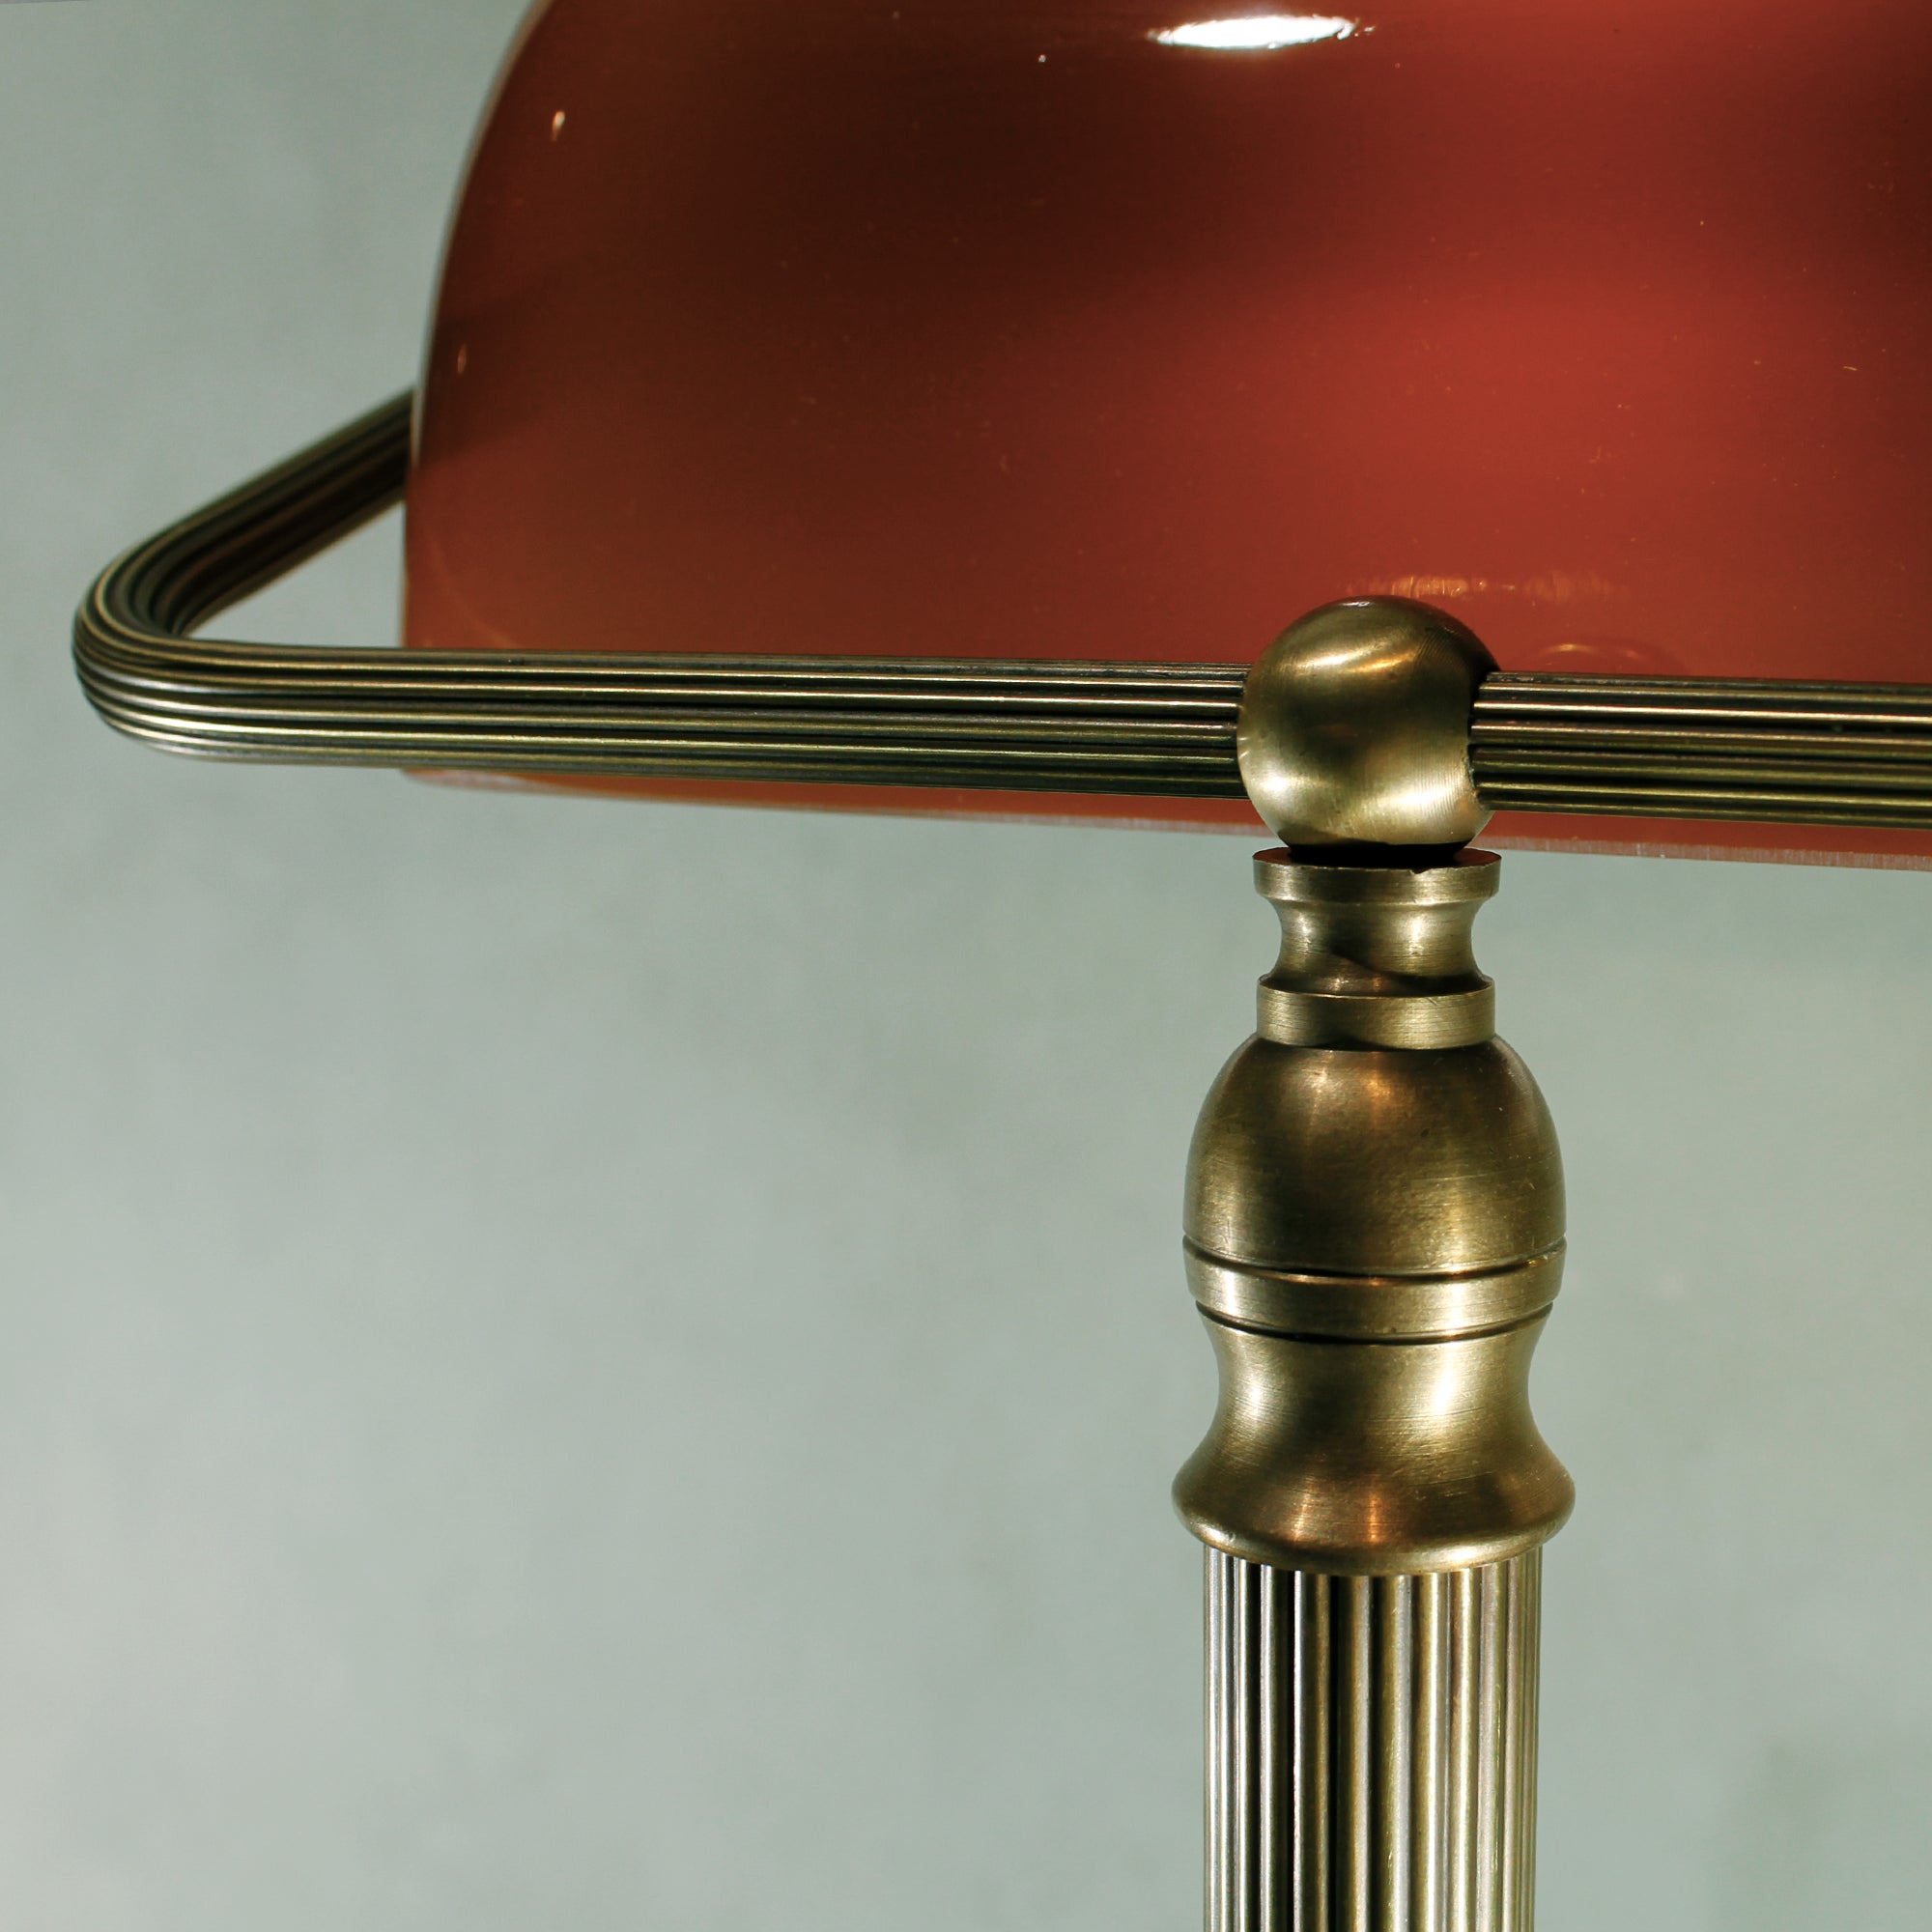 Art Nouveau Table Lamp "Cognac"